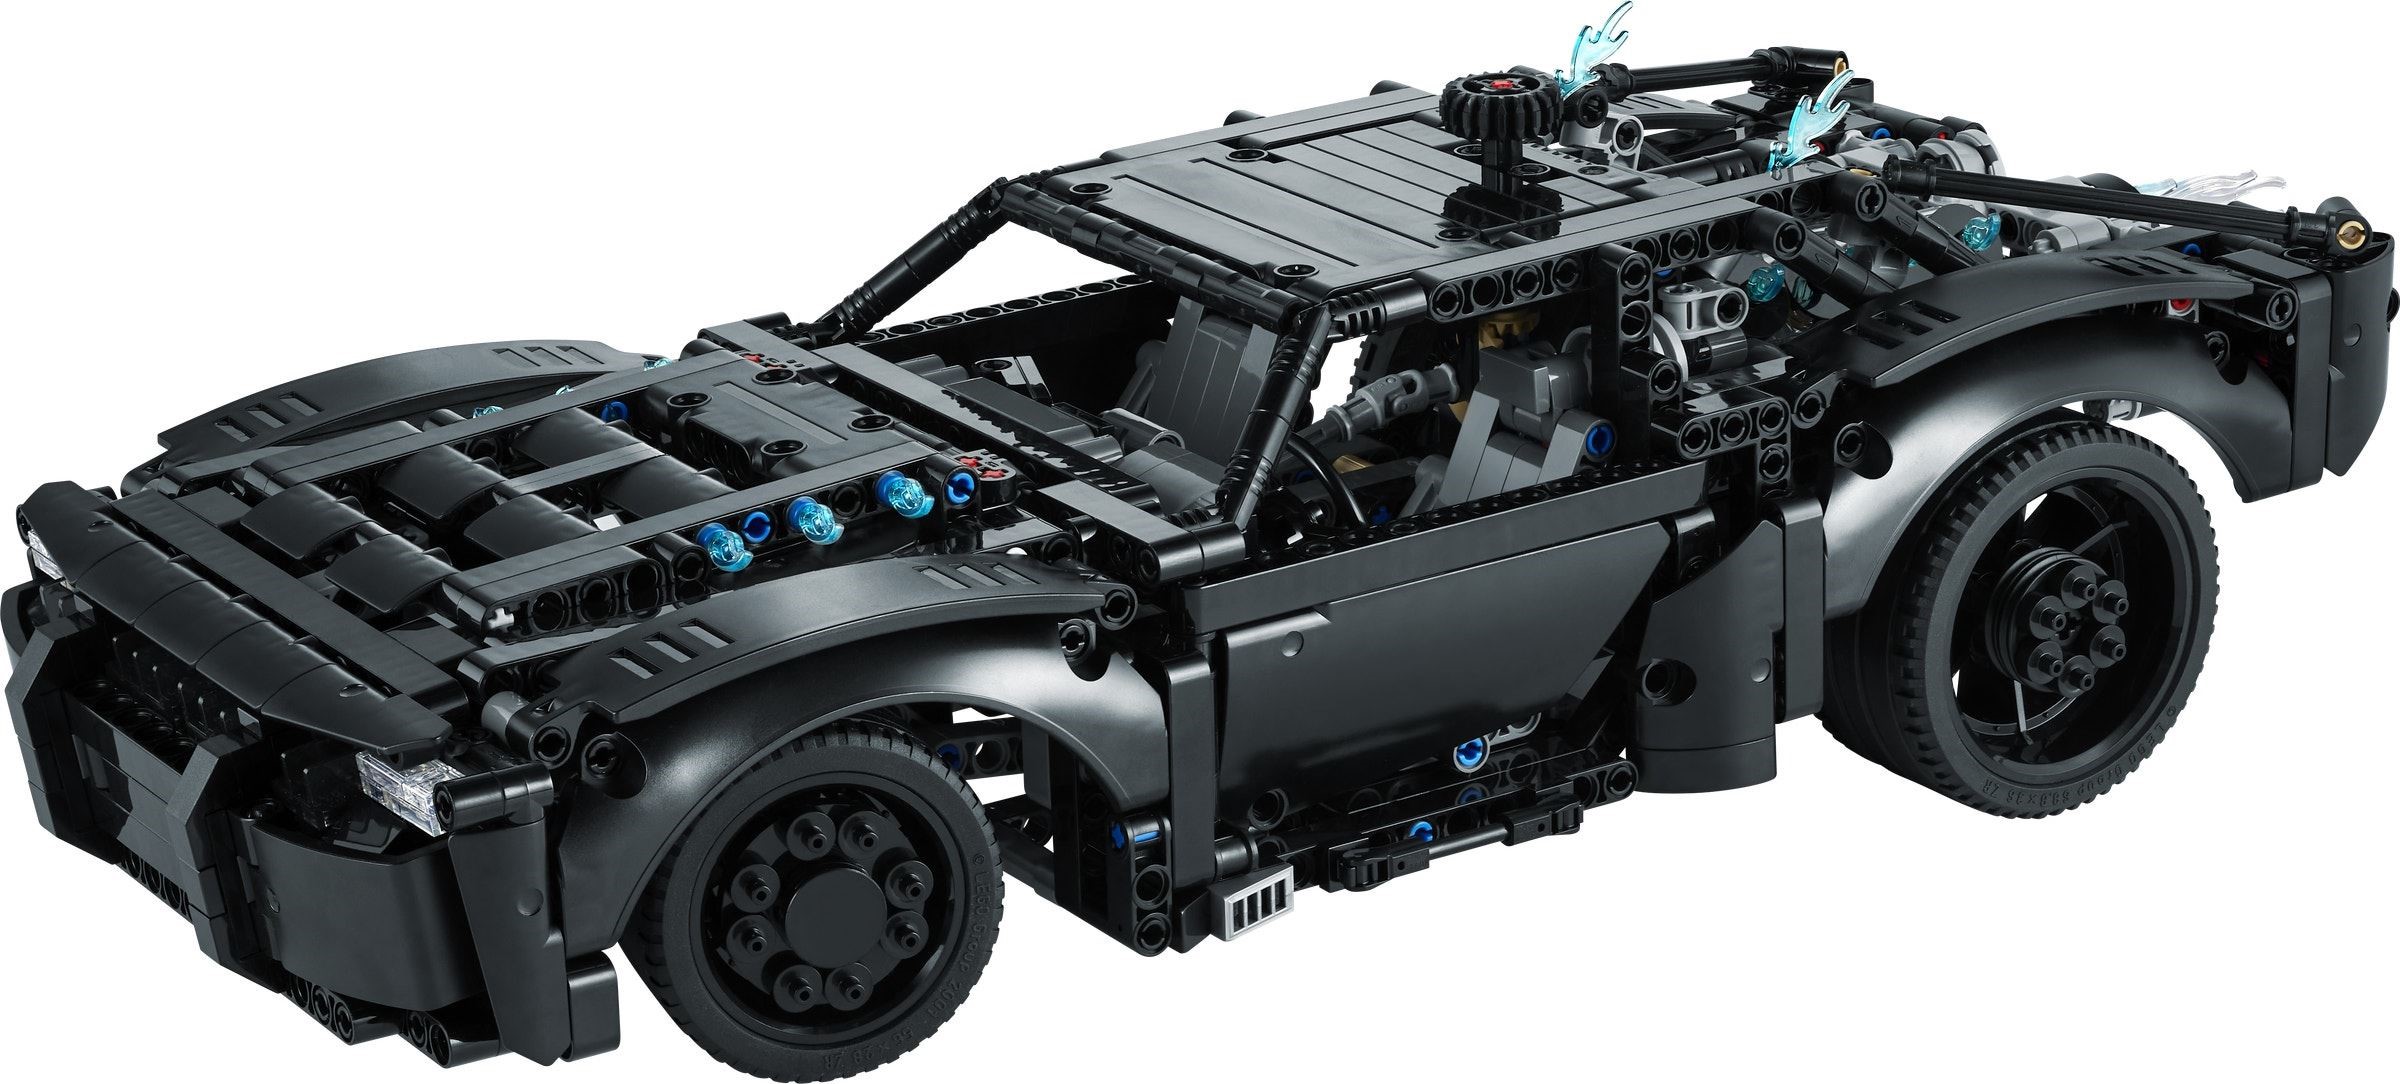 LEGO® Technic 42127 - BATMANS BATMOBIL™